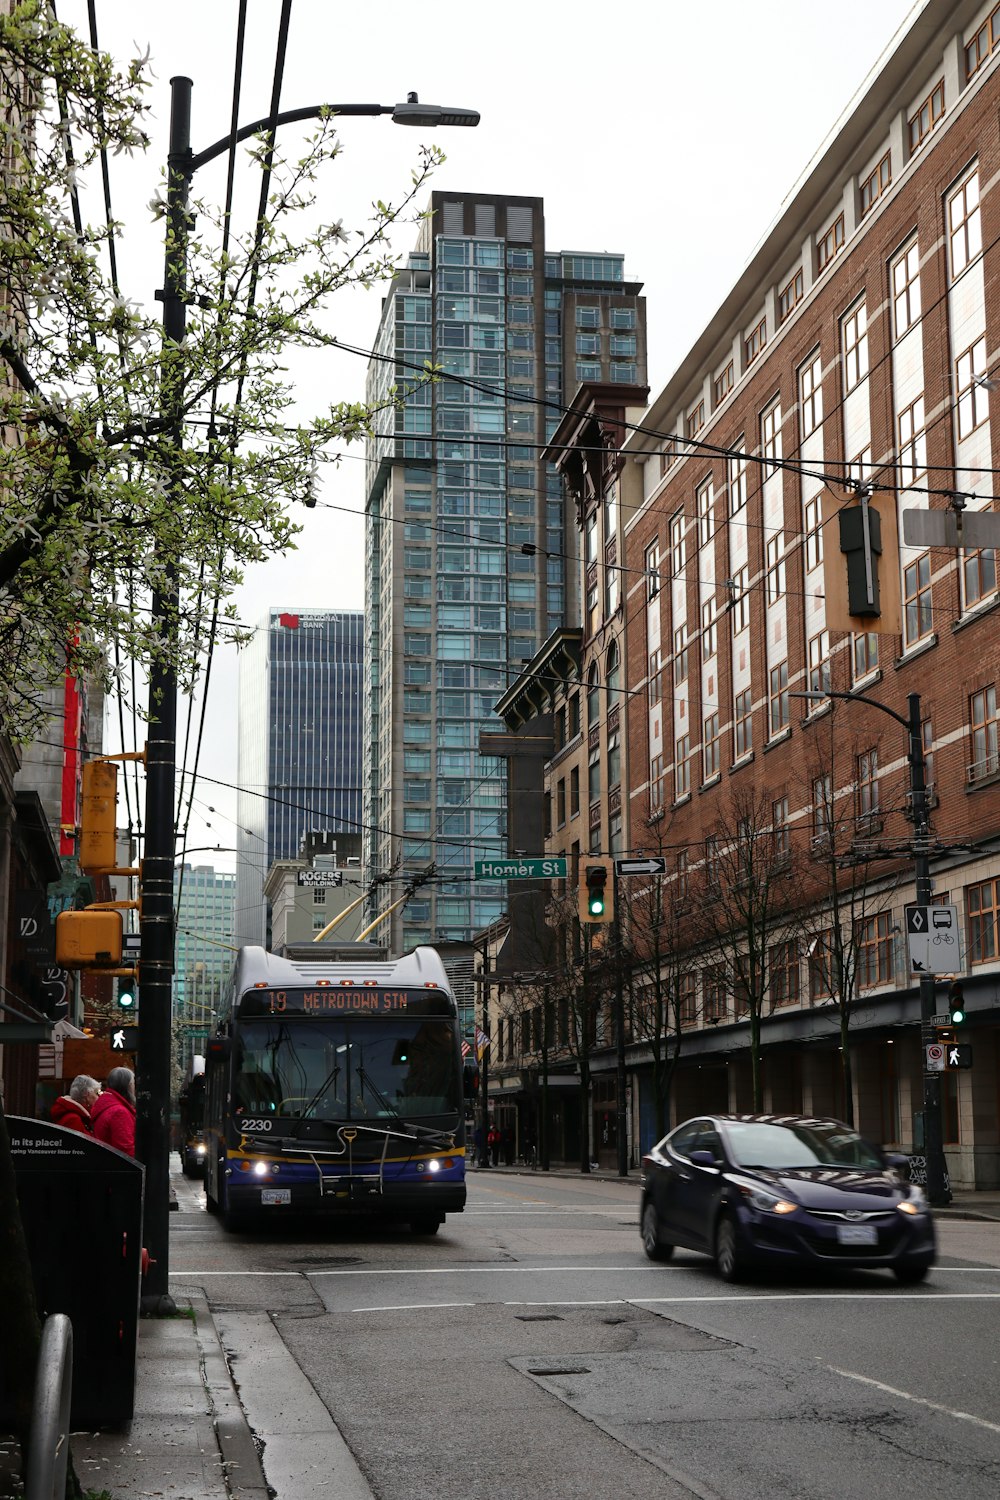 Un autobús conduciendo por una calle junto a edificios altos